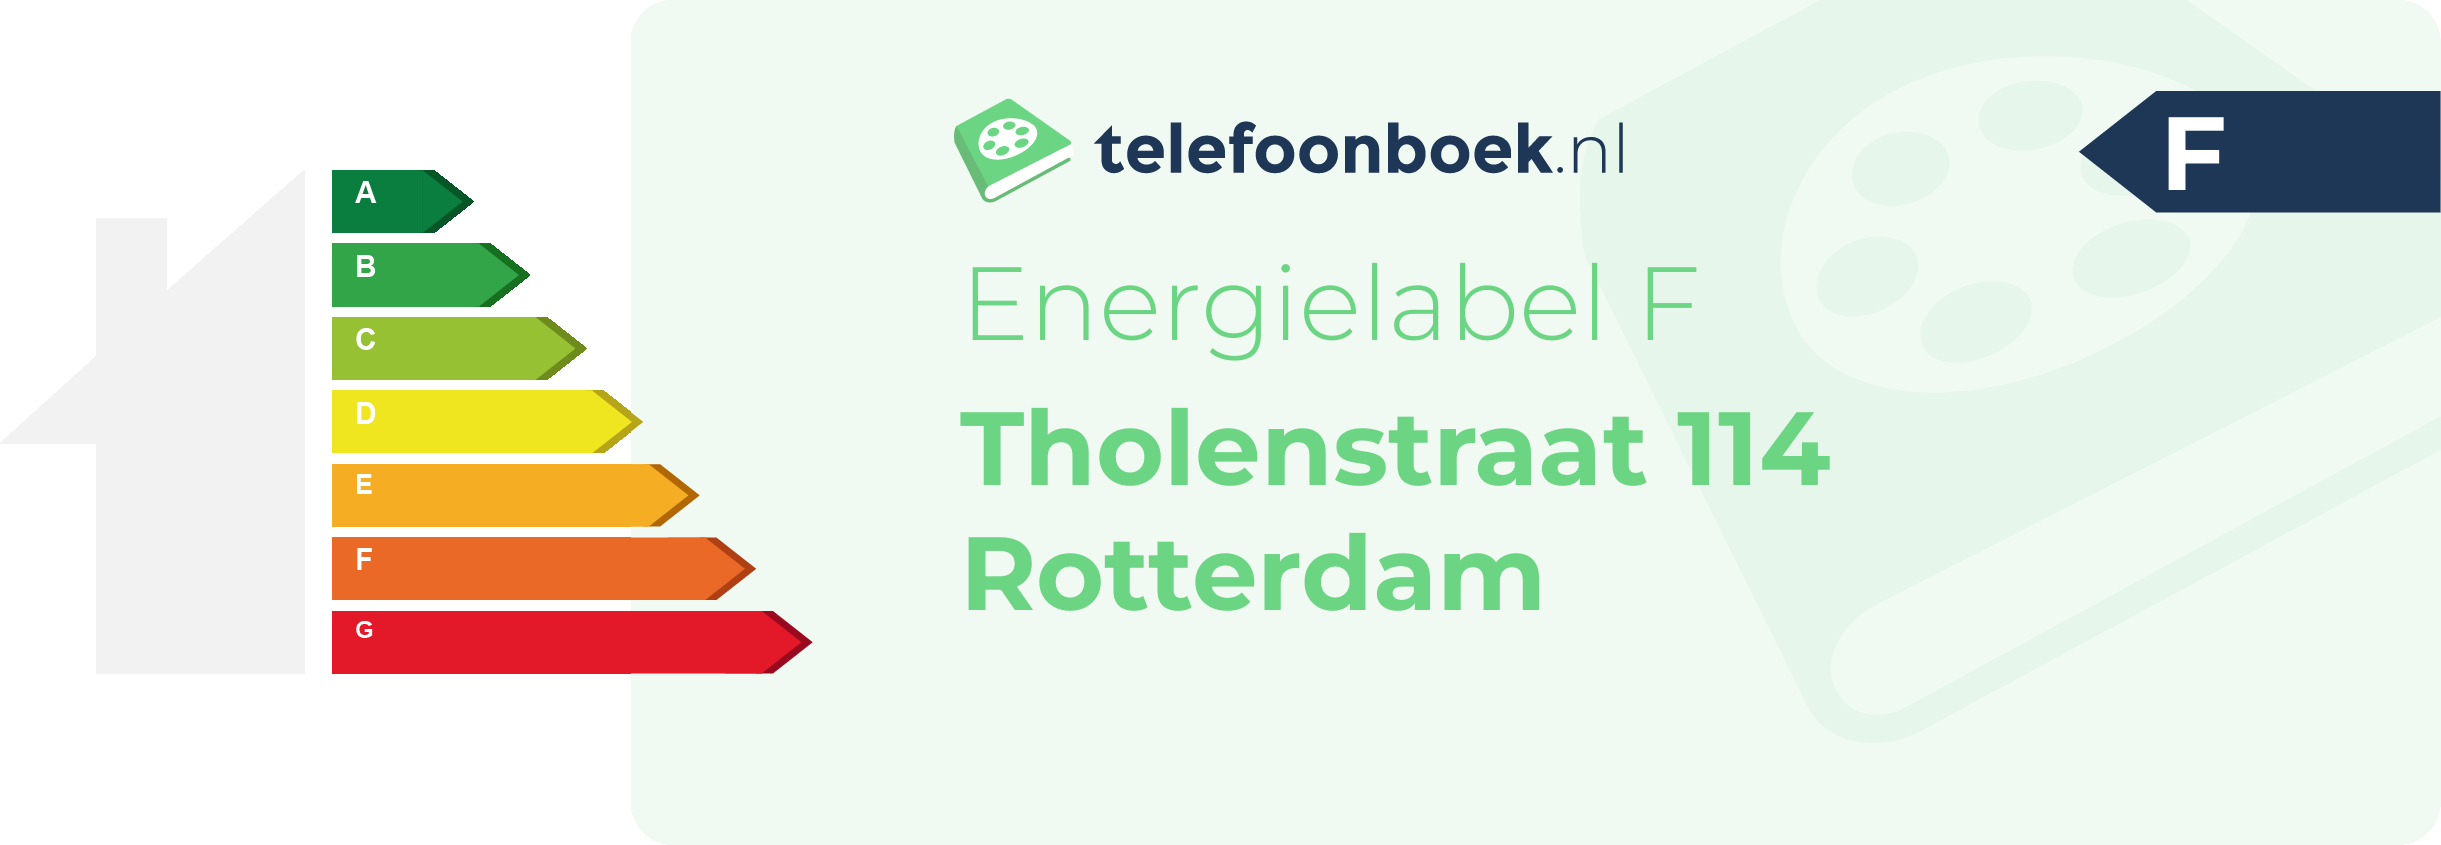 Energielabel Tholenstraat 114 Rotterdam